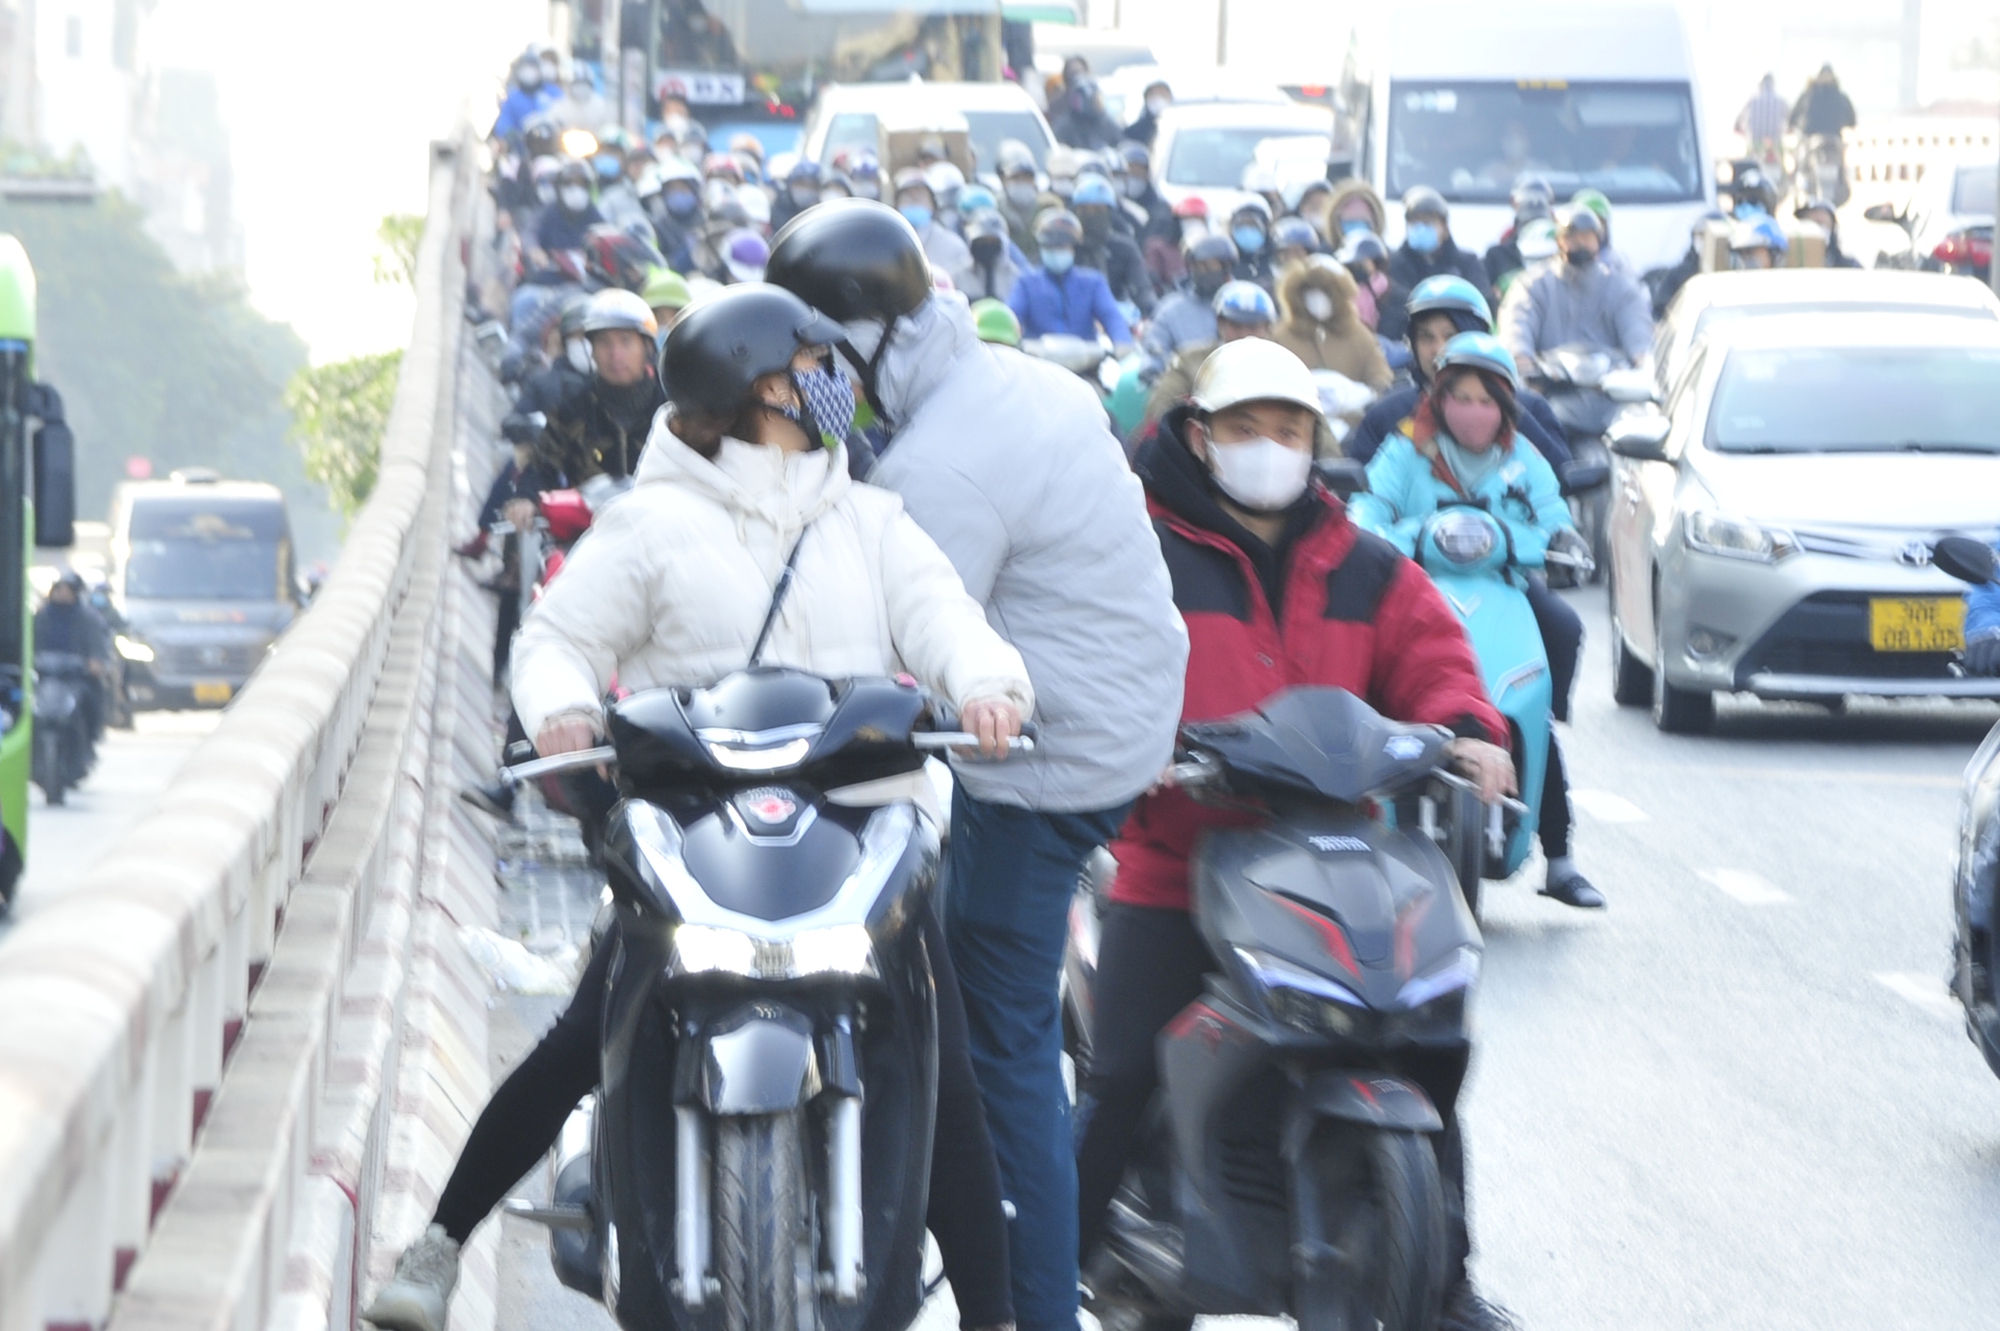 Hà Nội: Nhiều người và phương tiện bất ngờ trượt ngã trên dốc cầu vượt ngã tư Vọng- Ảnh 2.